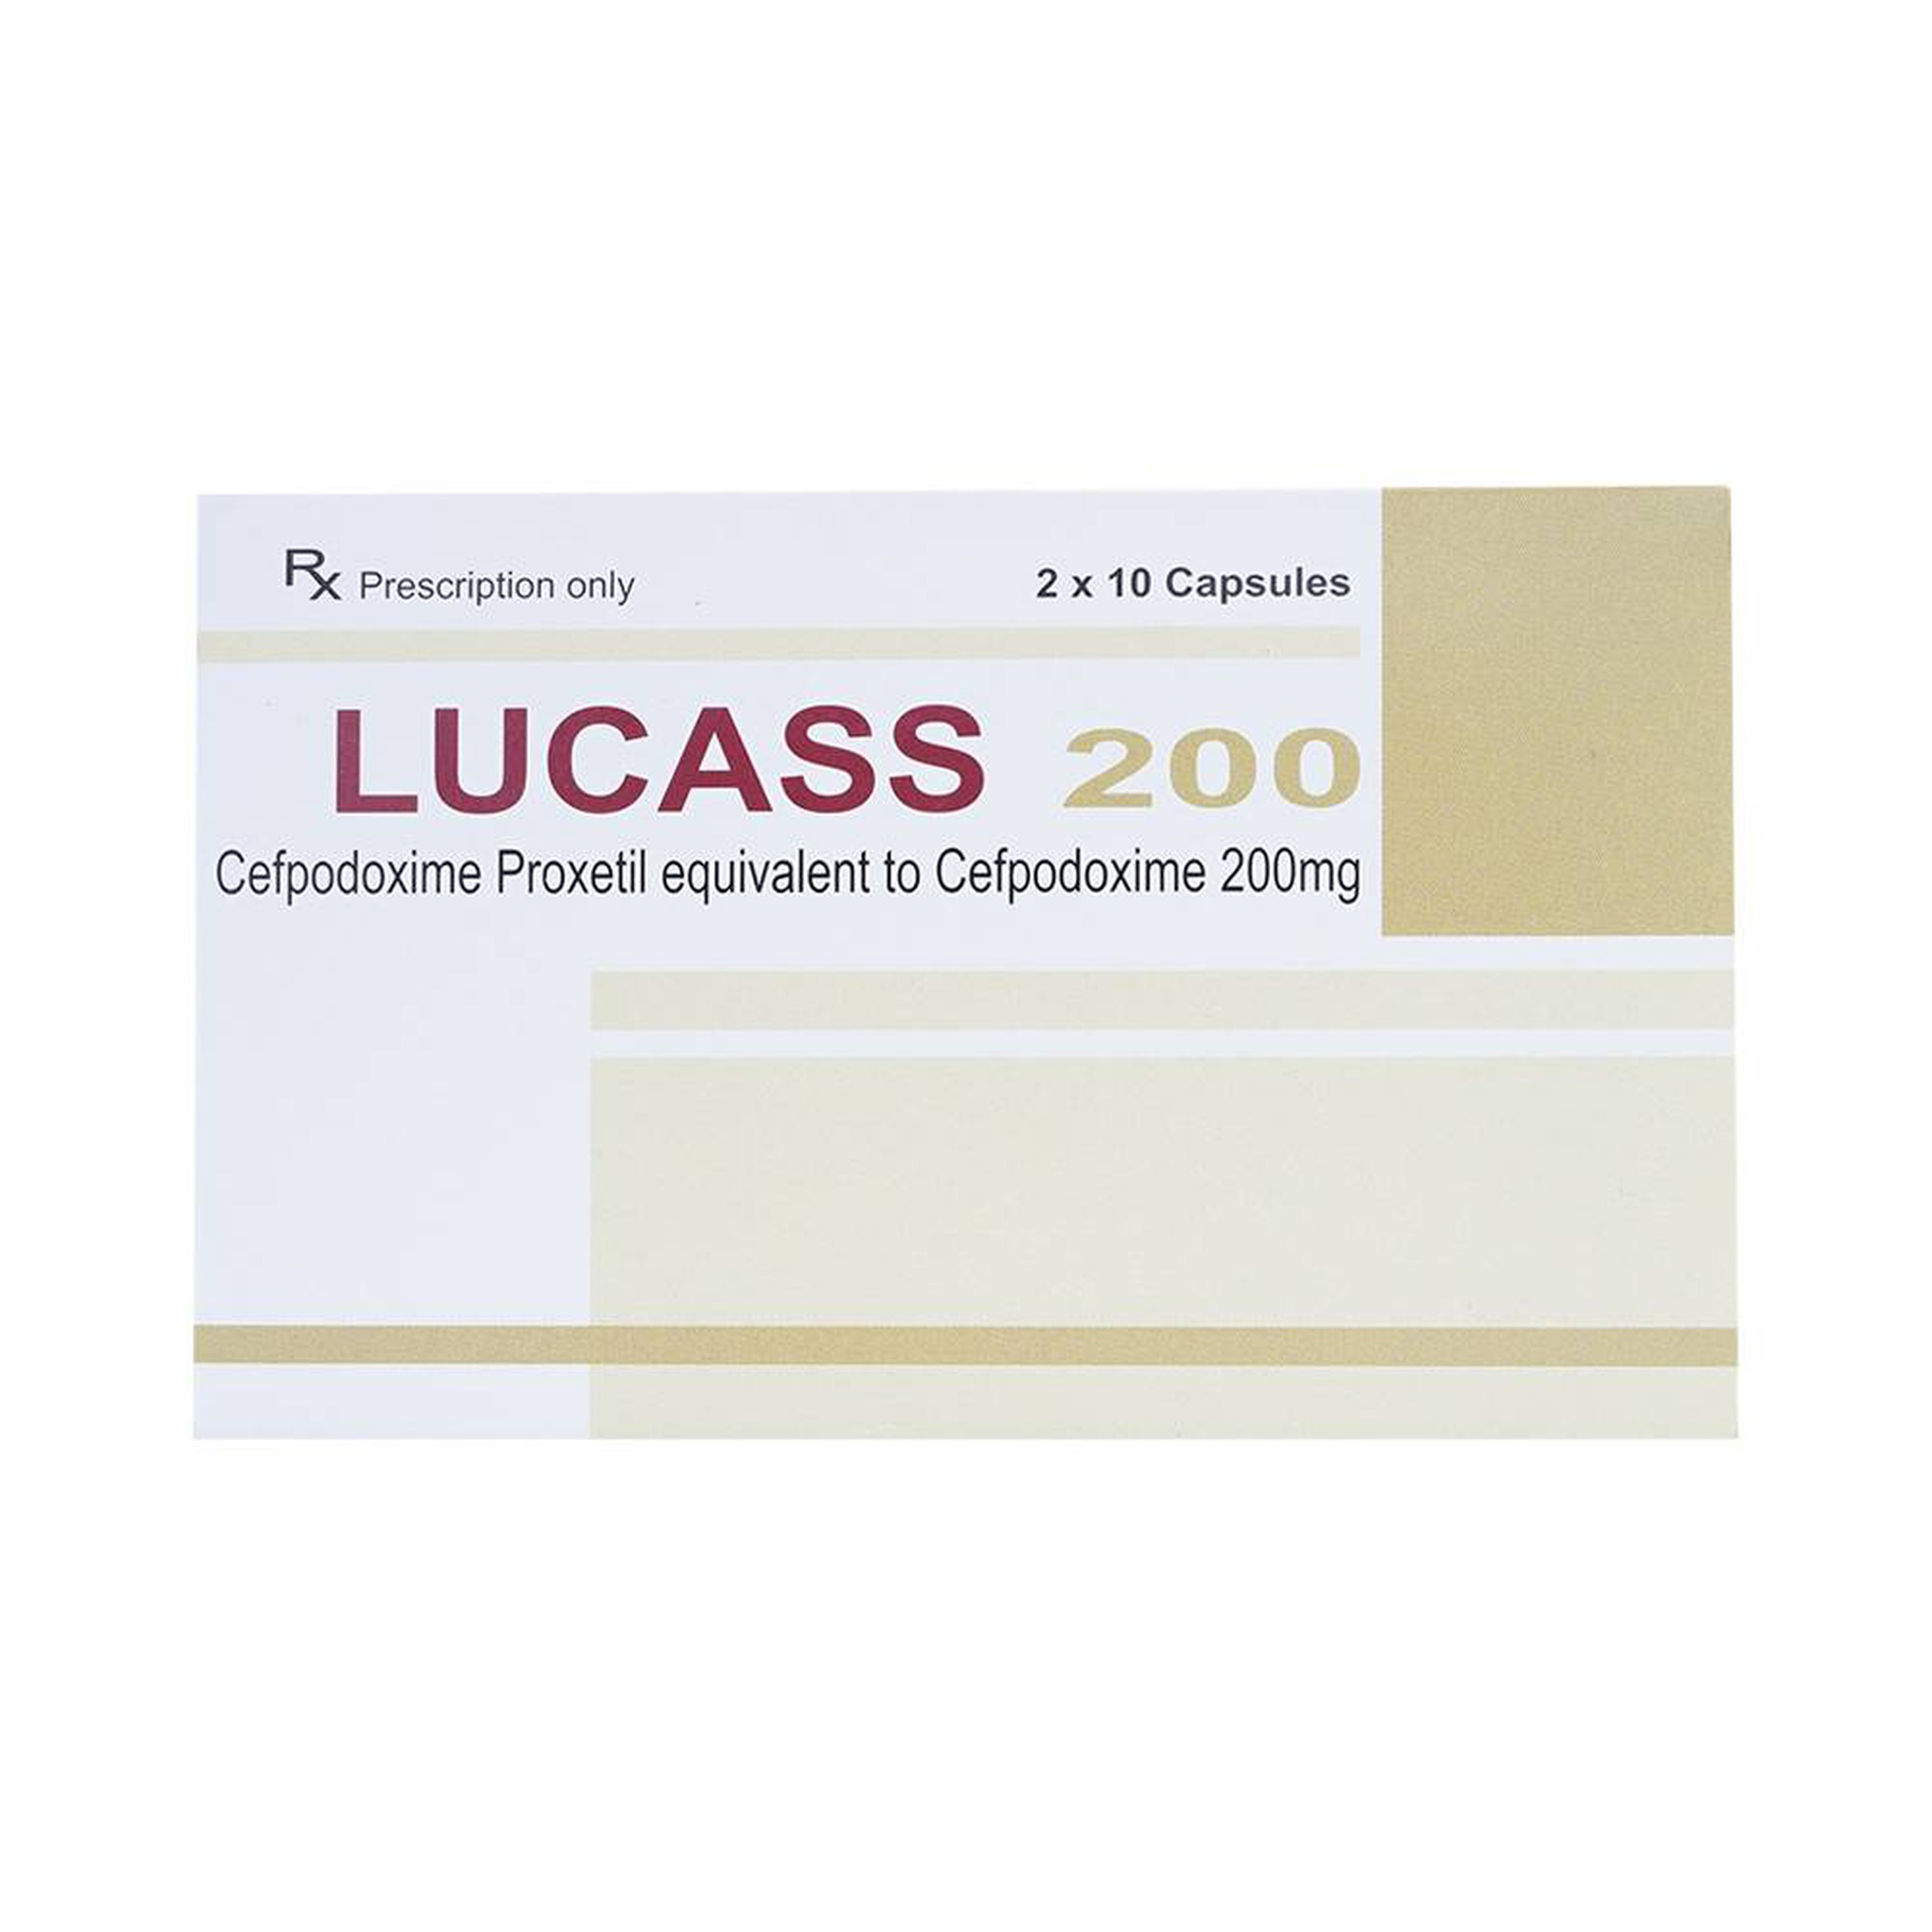 Thuốc Lucass 200 Maxim điều trị viêm phổi, viêm phế quản, viêm họng (2 vỉ x 10 viên)